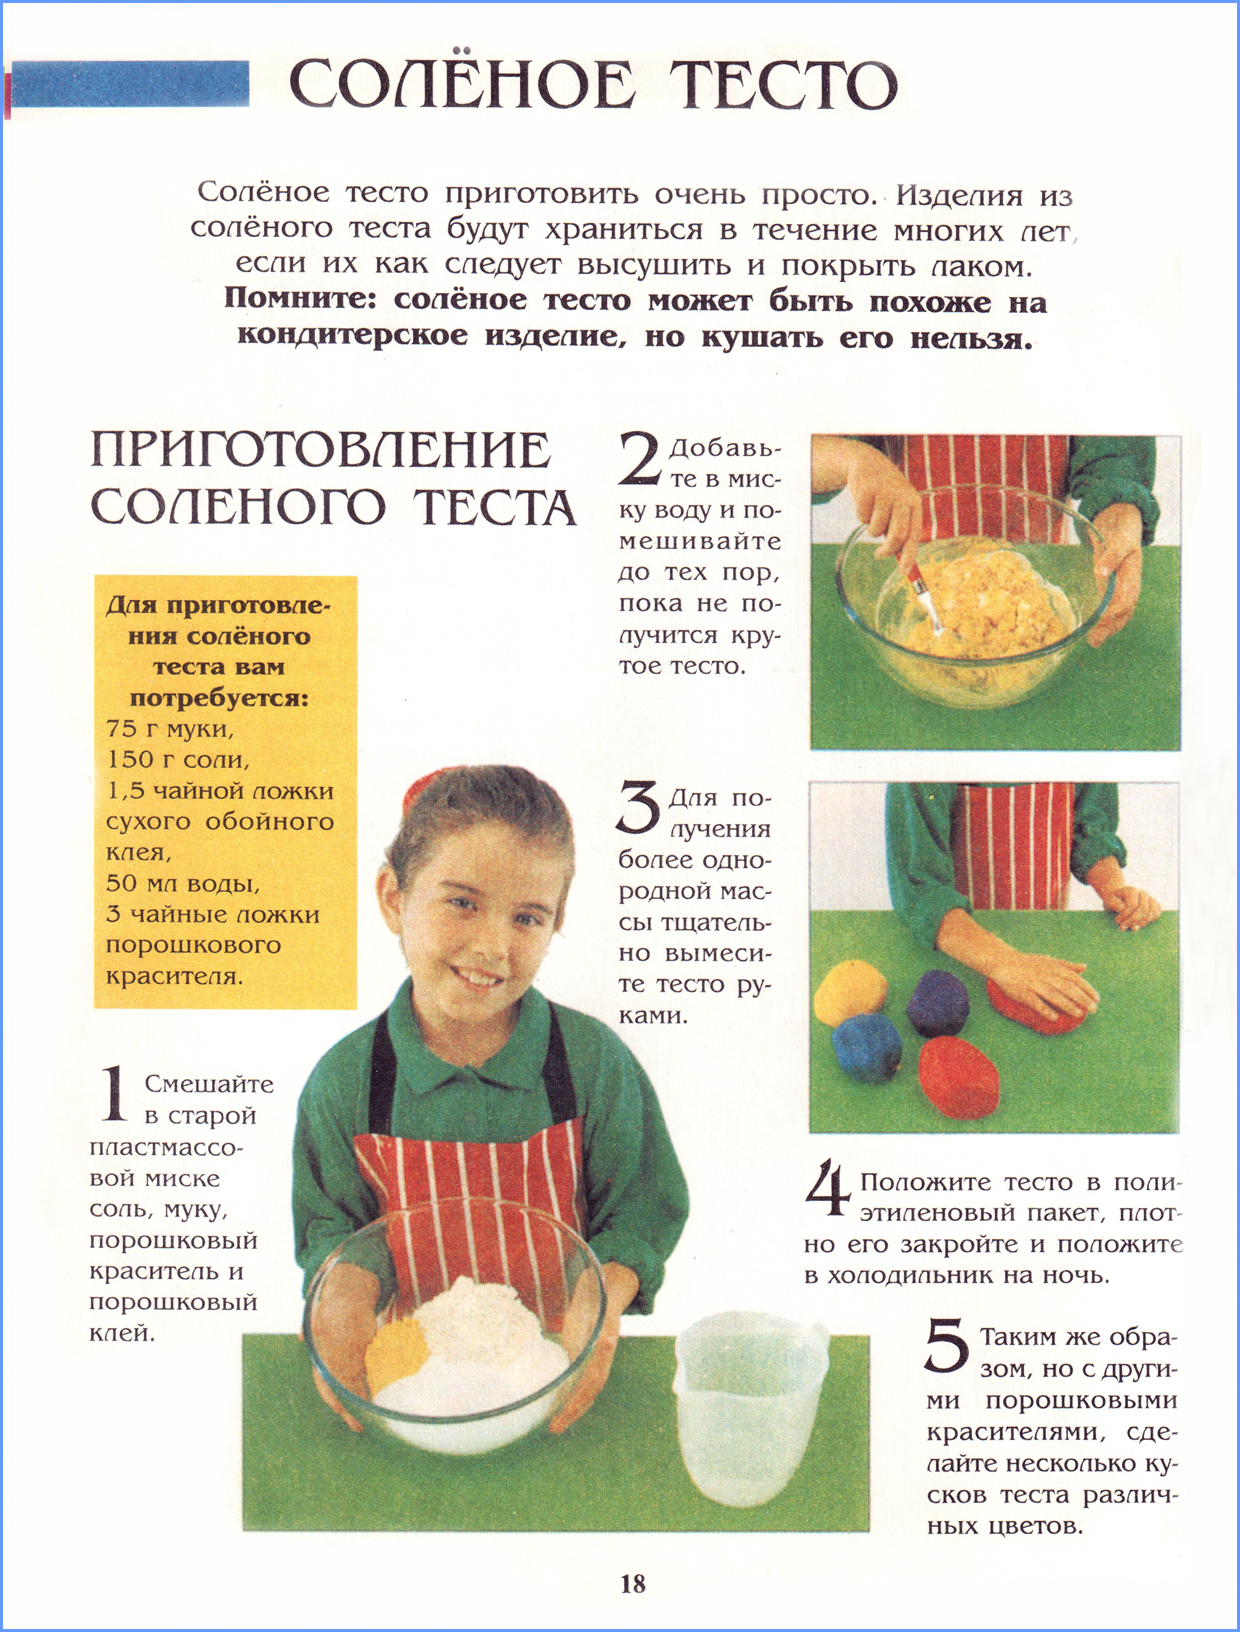 Рецепт детского теста для лепки. Как делать солёное тесто для поделок. Рецепт детского теста для лепки в домашних условиях. Как сделать солёное тесто для лепки в домашних условиях. Как делать тесто для лепки с солью.